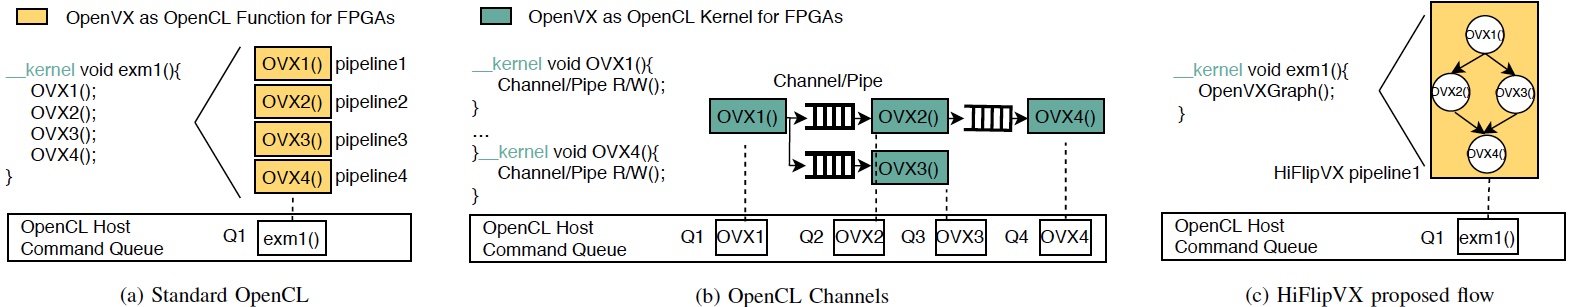 Programming flow alternatives for OpenVX using HLS for FPGA devices